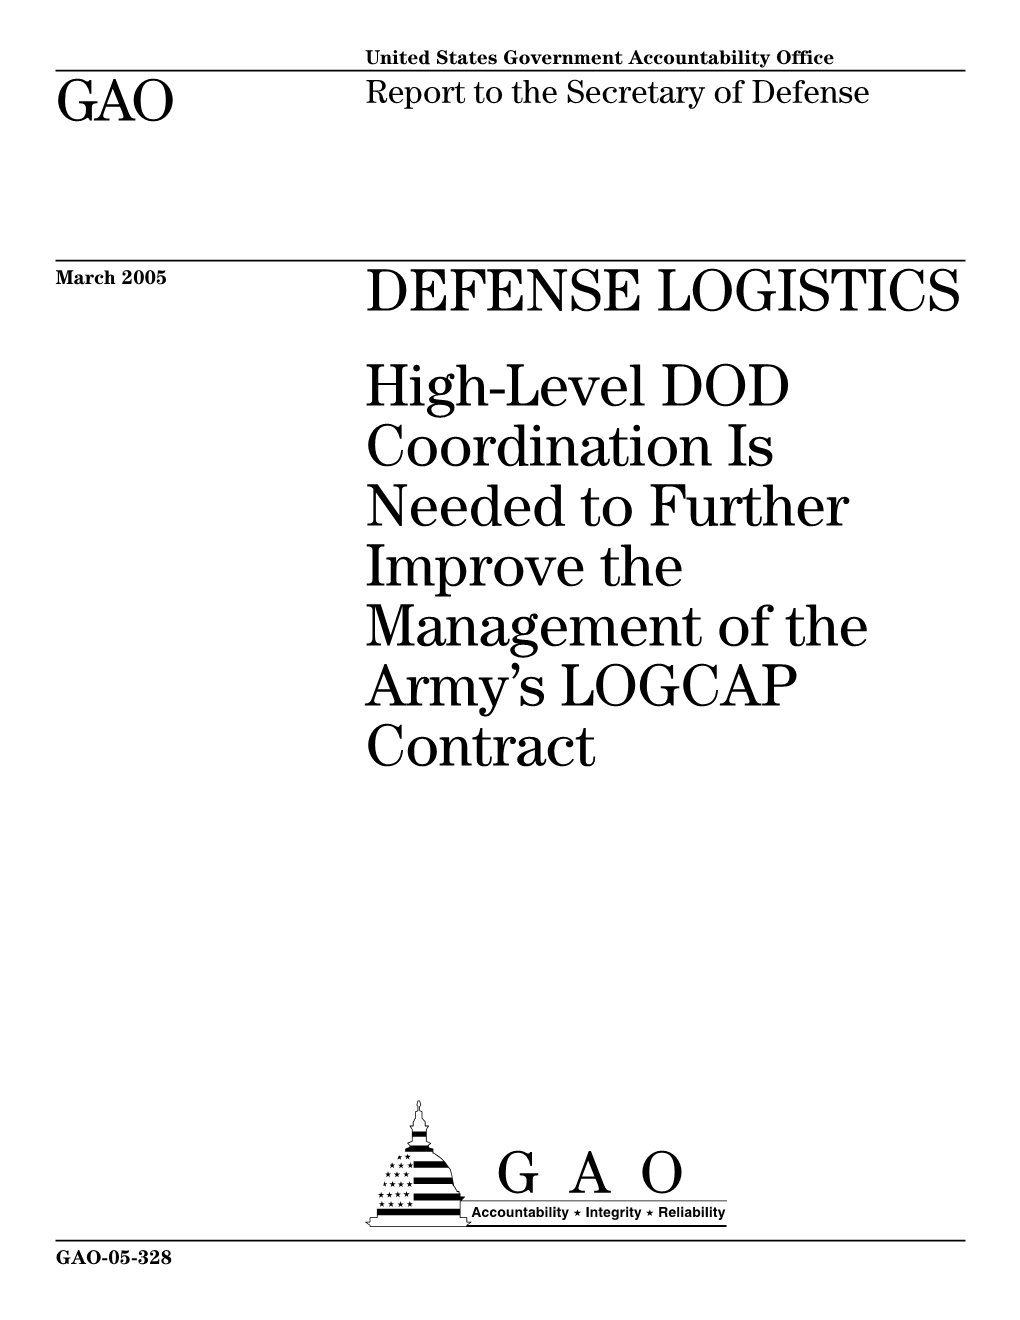 GAO-05-328 Defense Logistics